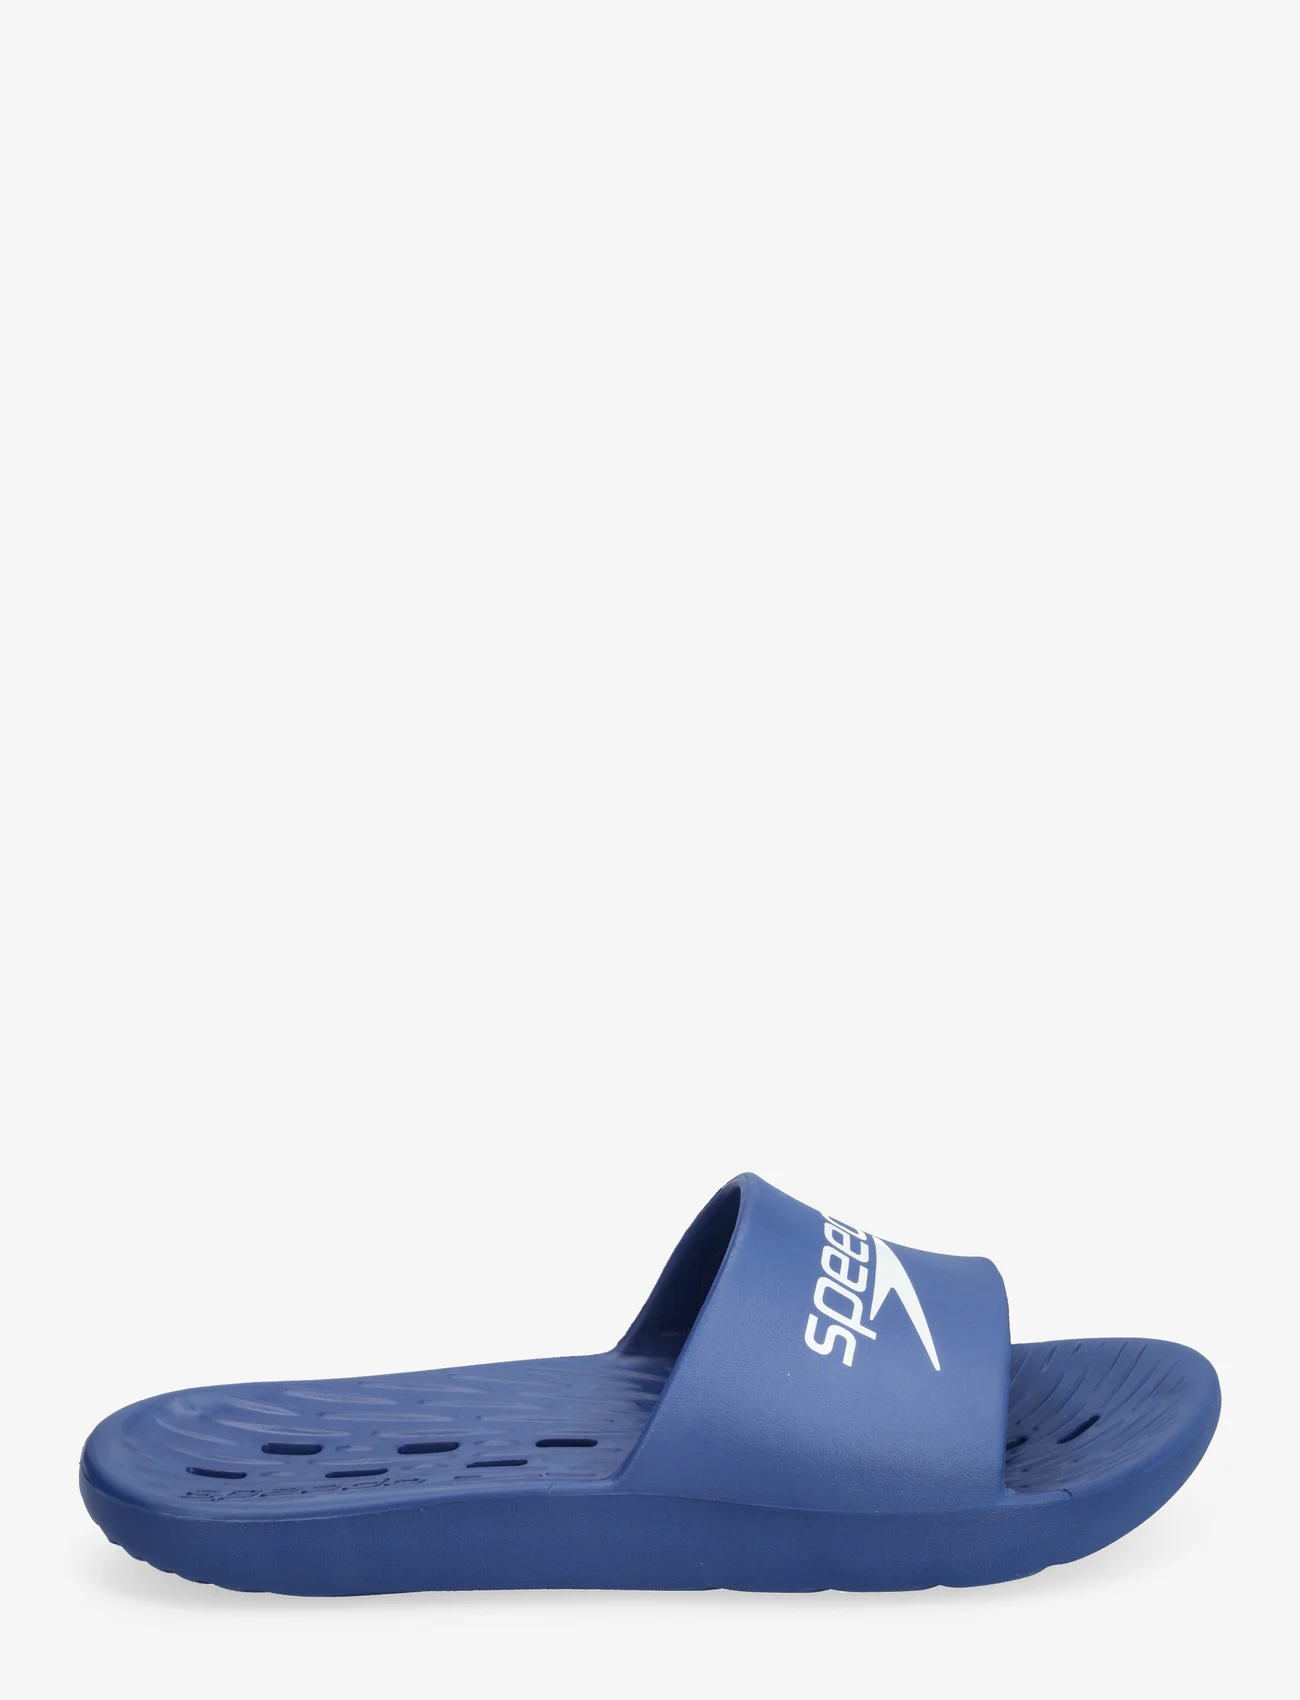 Speedo - Speedo Slide AM - sandals - navy/white - 1